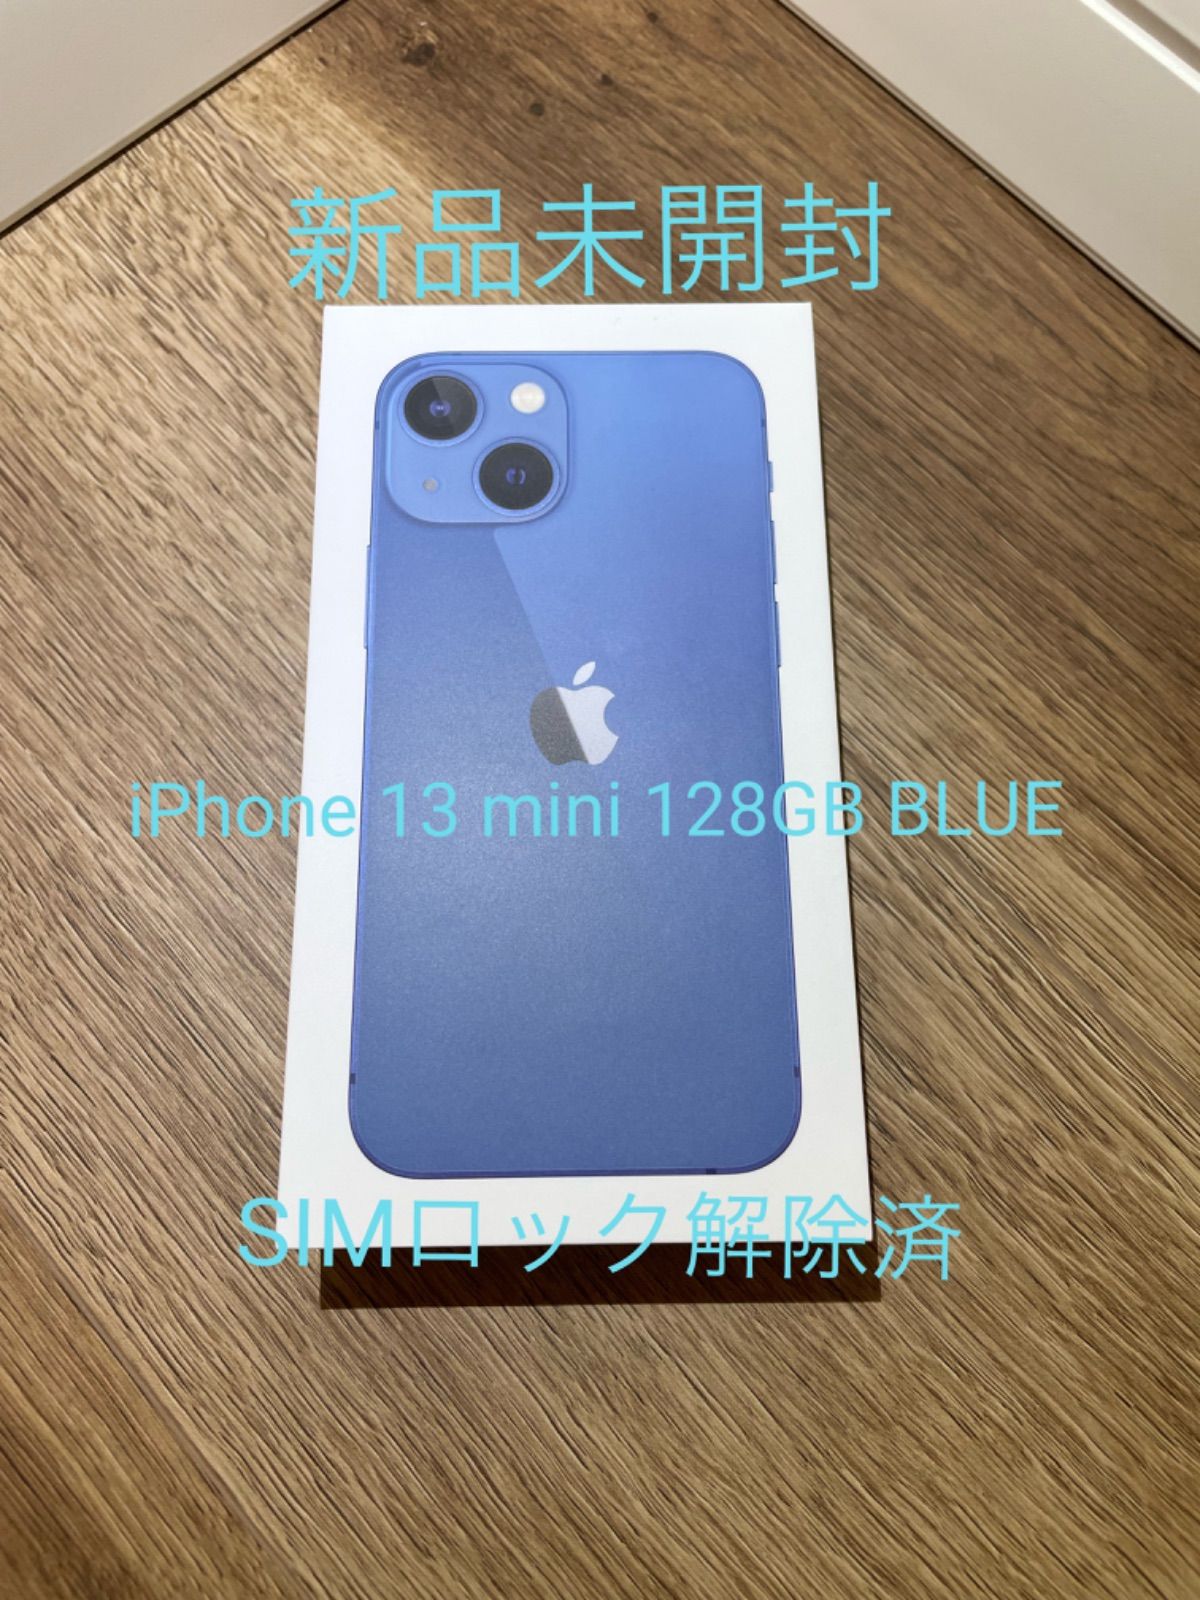 新品未開封 iPhone 13 mini 128GB BLUE SIMフリー - メルカリ